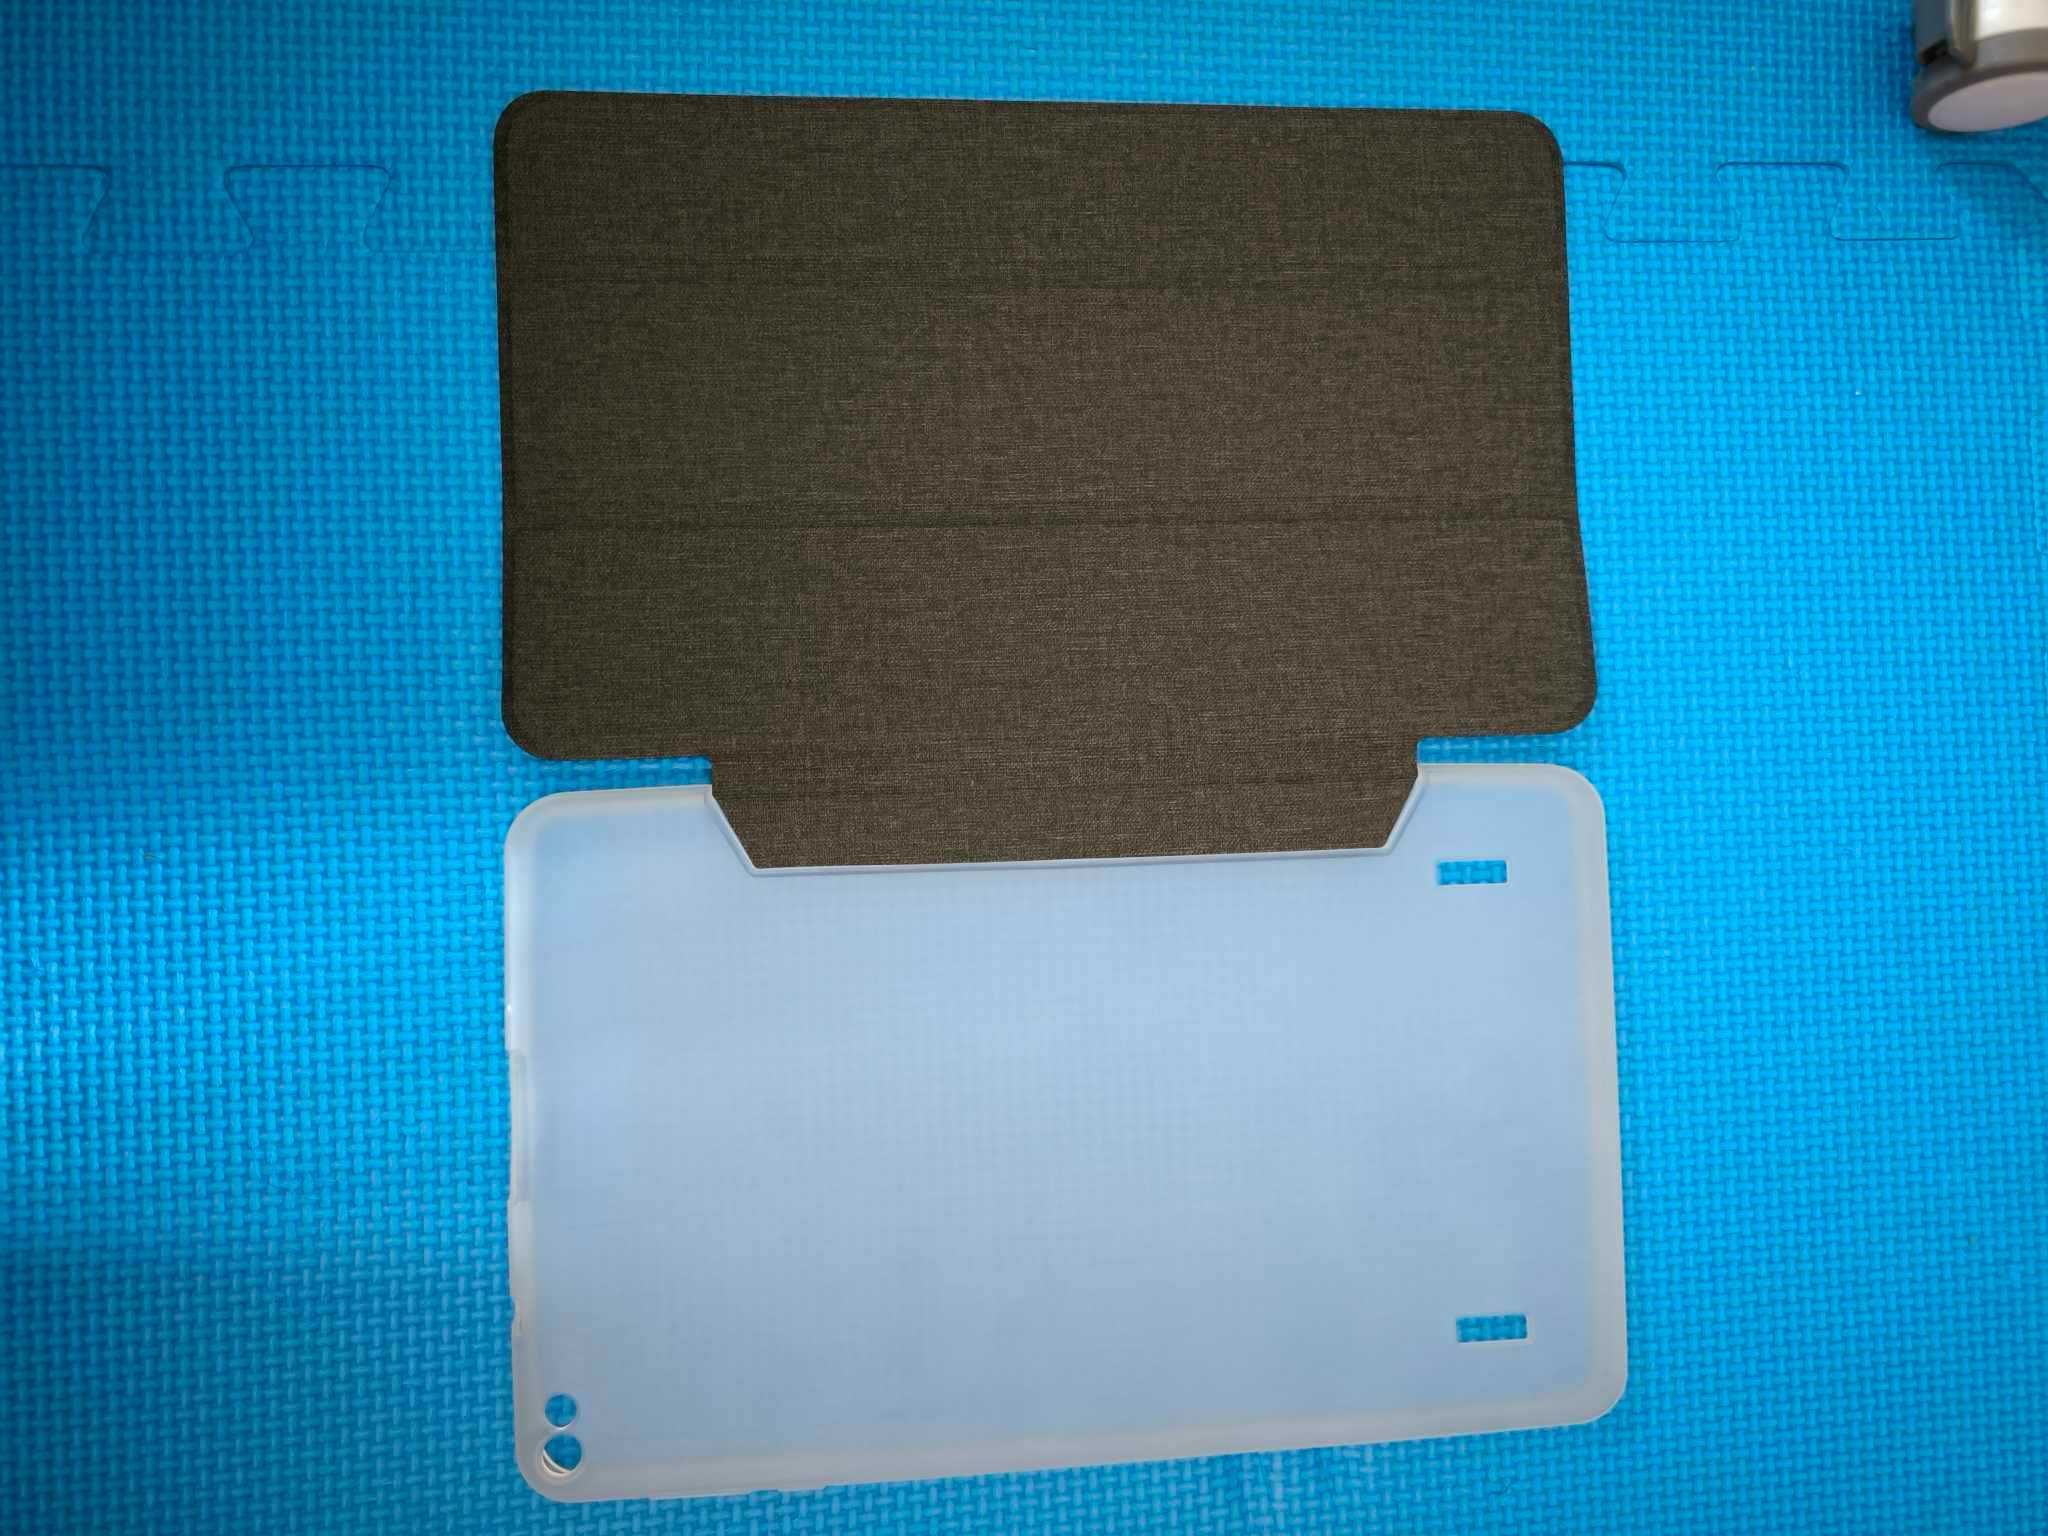 Informática - HDMI1213-Y29; Protetor de ecrã - tablet; capa tablet